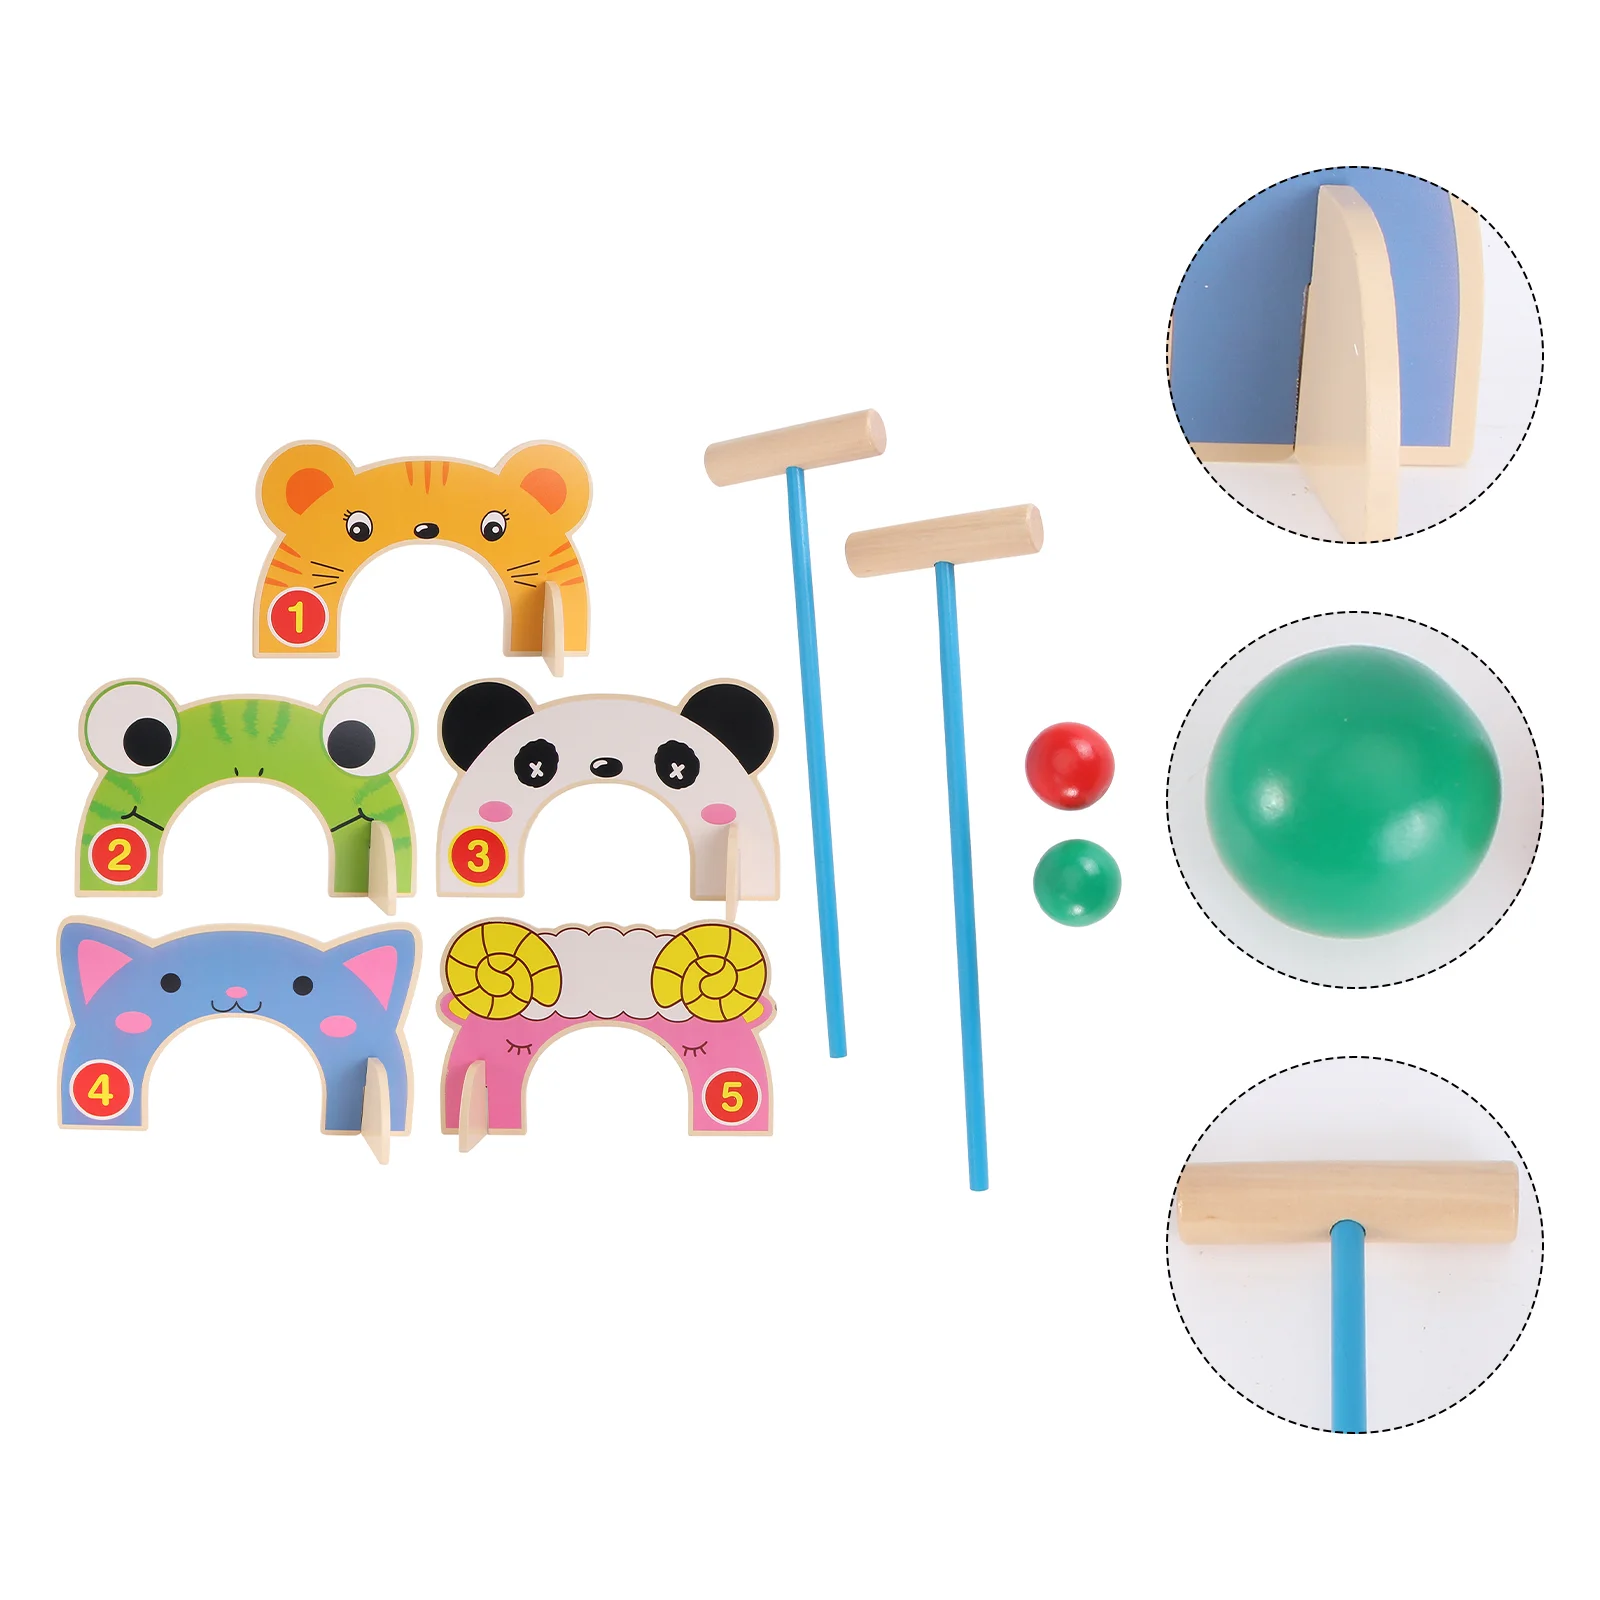 

Игрушки для детей дошкольного возраста, шары для боулинга, товары для детской комнаты, деревянные игрушки в виде животных, интерактивные шарики для детей